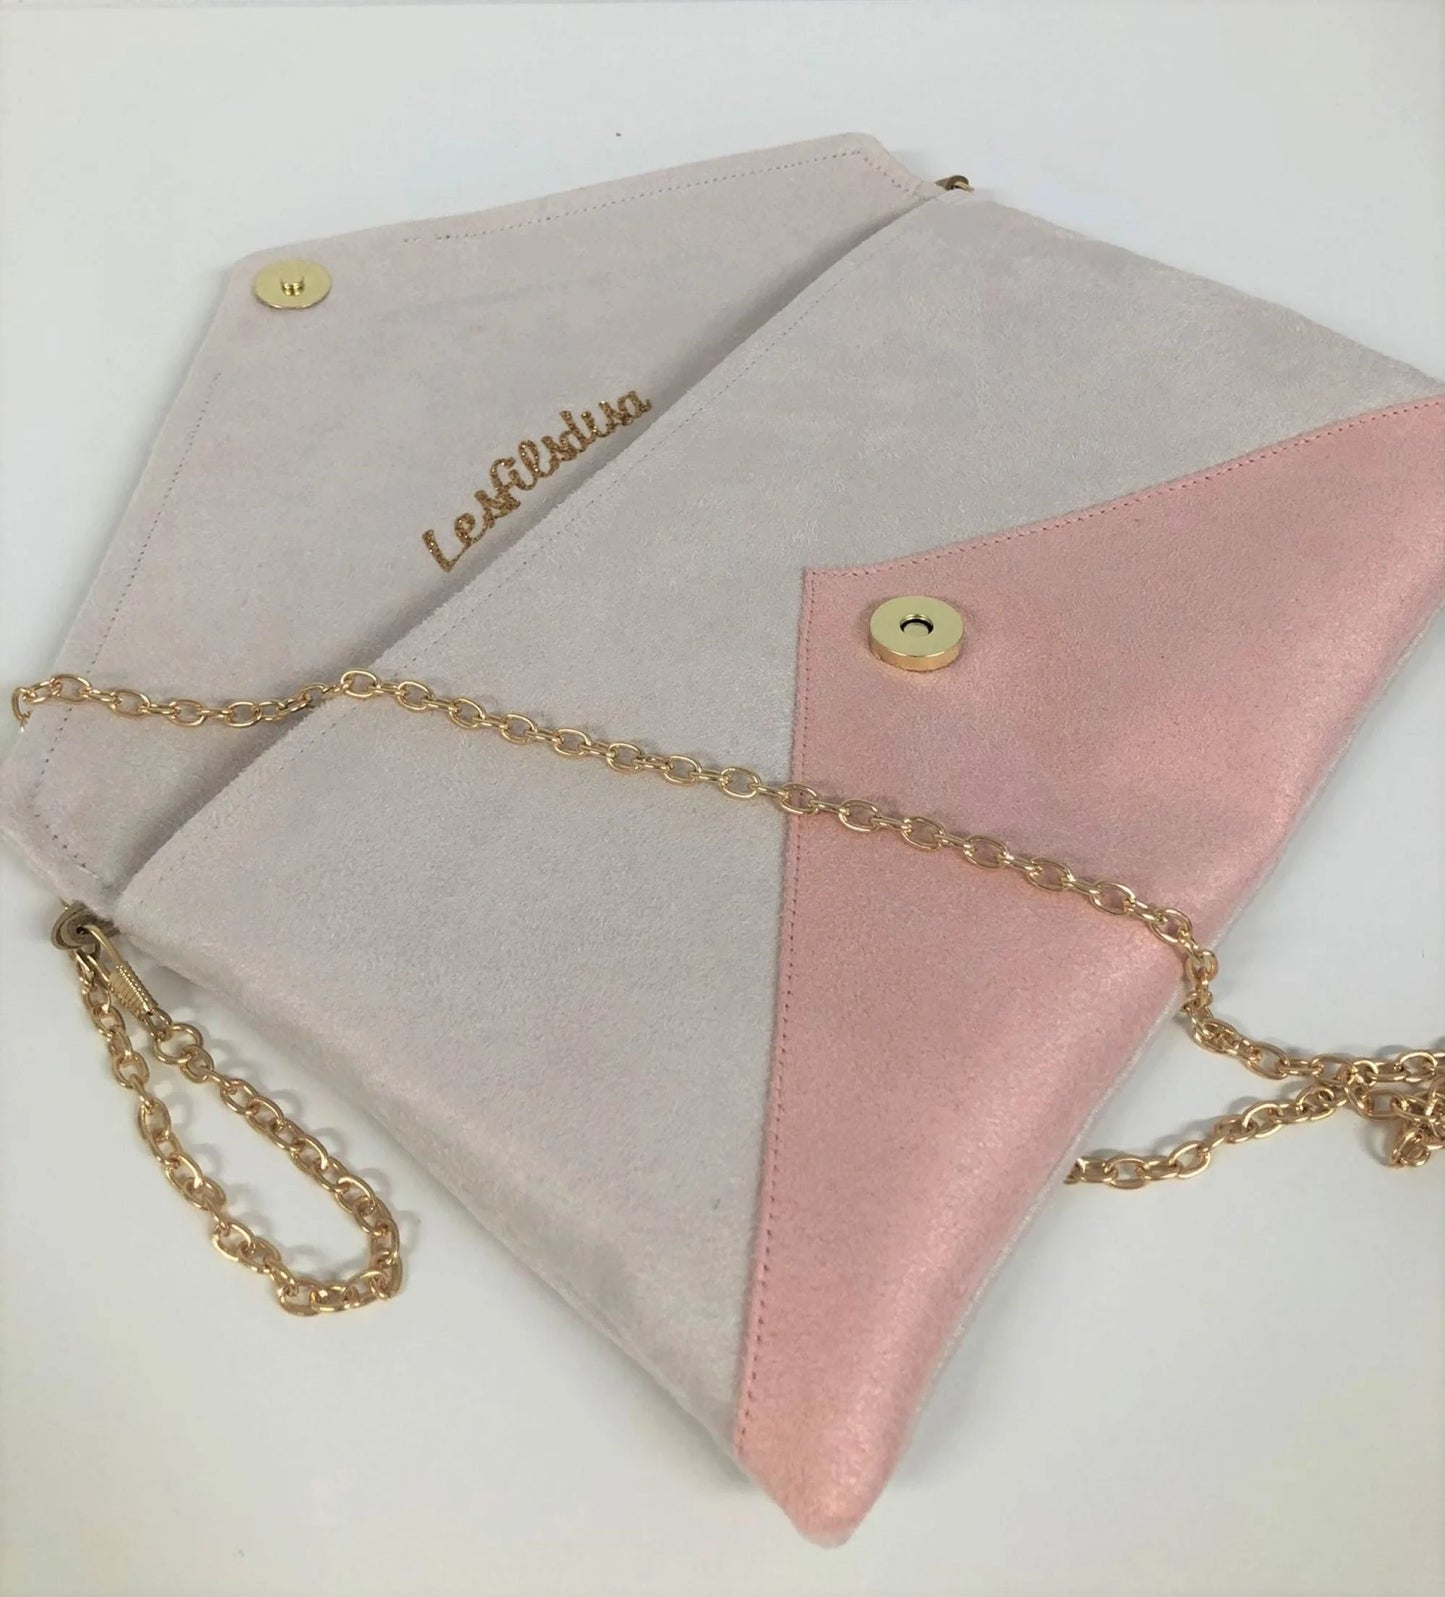 Le sac pochette Isa écru et rose poudré à paillettes dorées, ouvert.